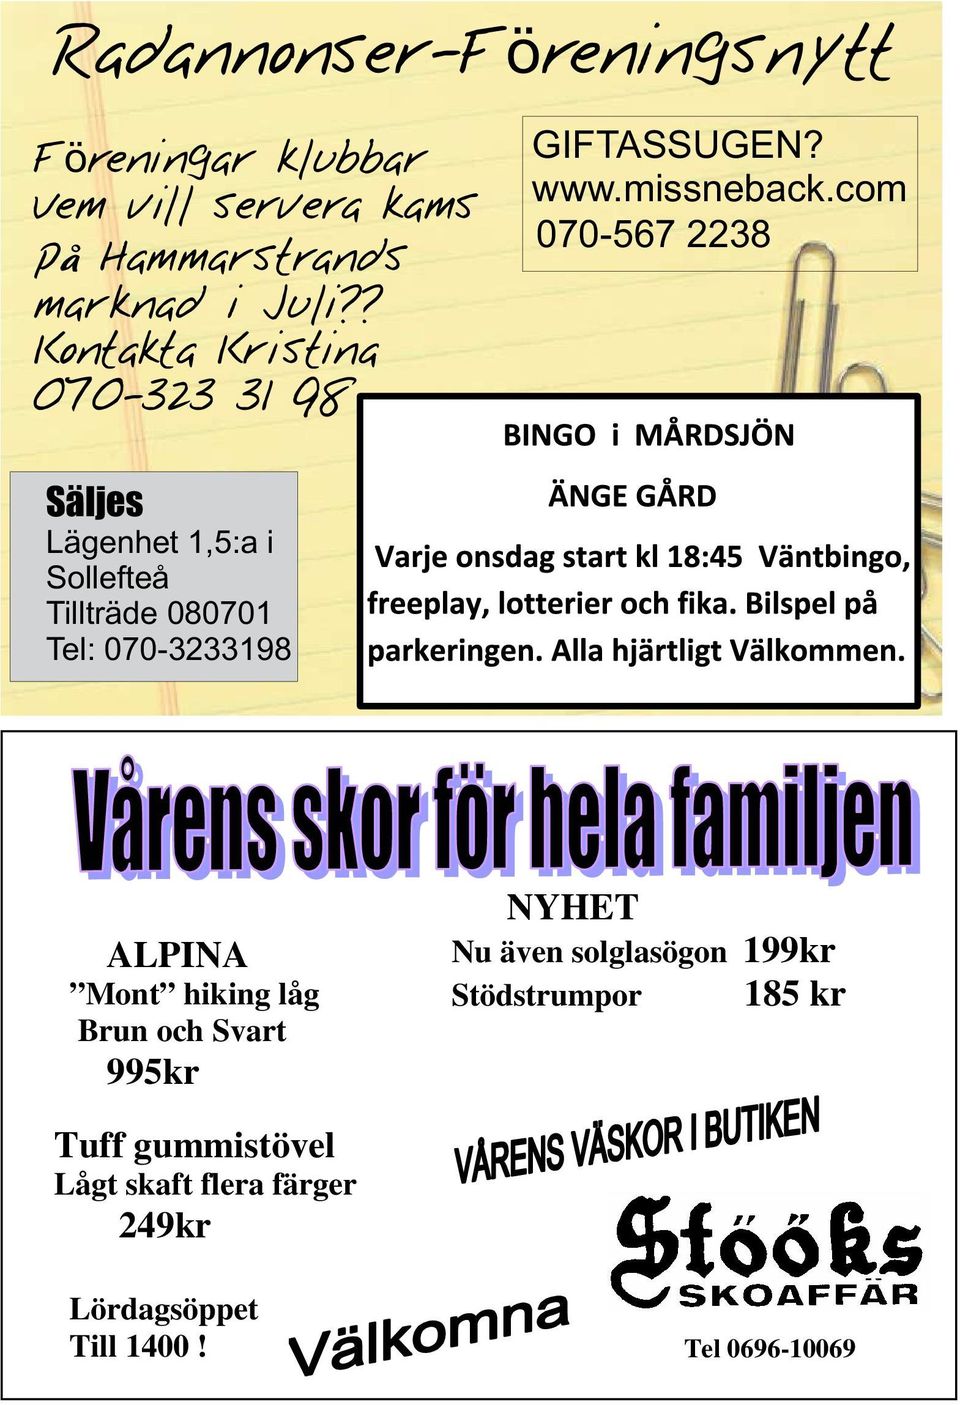 com 070-567 2238 Säljes Lägenhet 1,5:a i Sollefteå Tillträde 080701 Tel: 070-3233198 Skit åskksski ALPINA